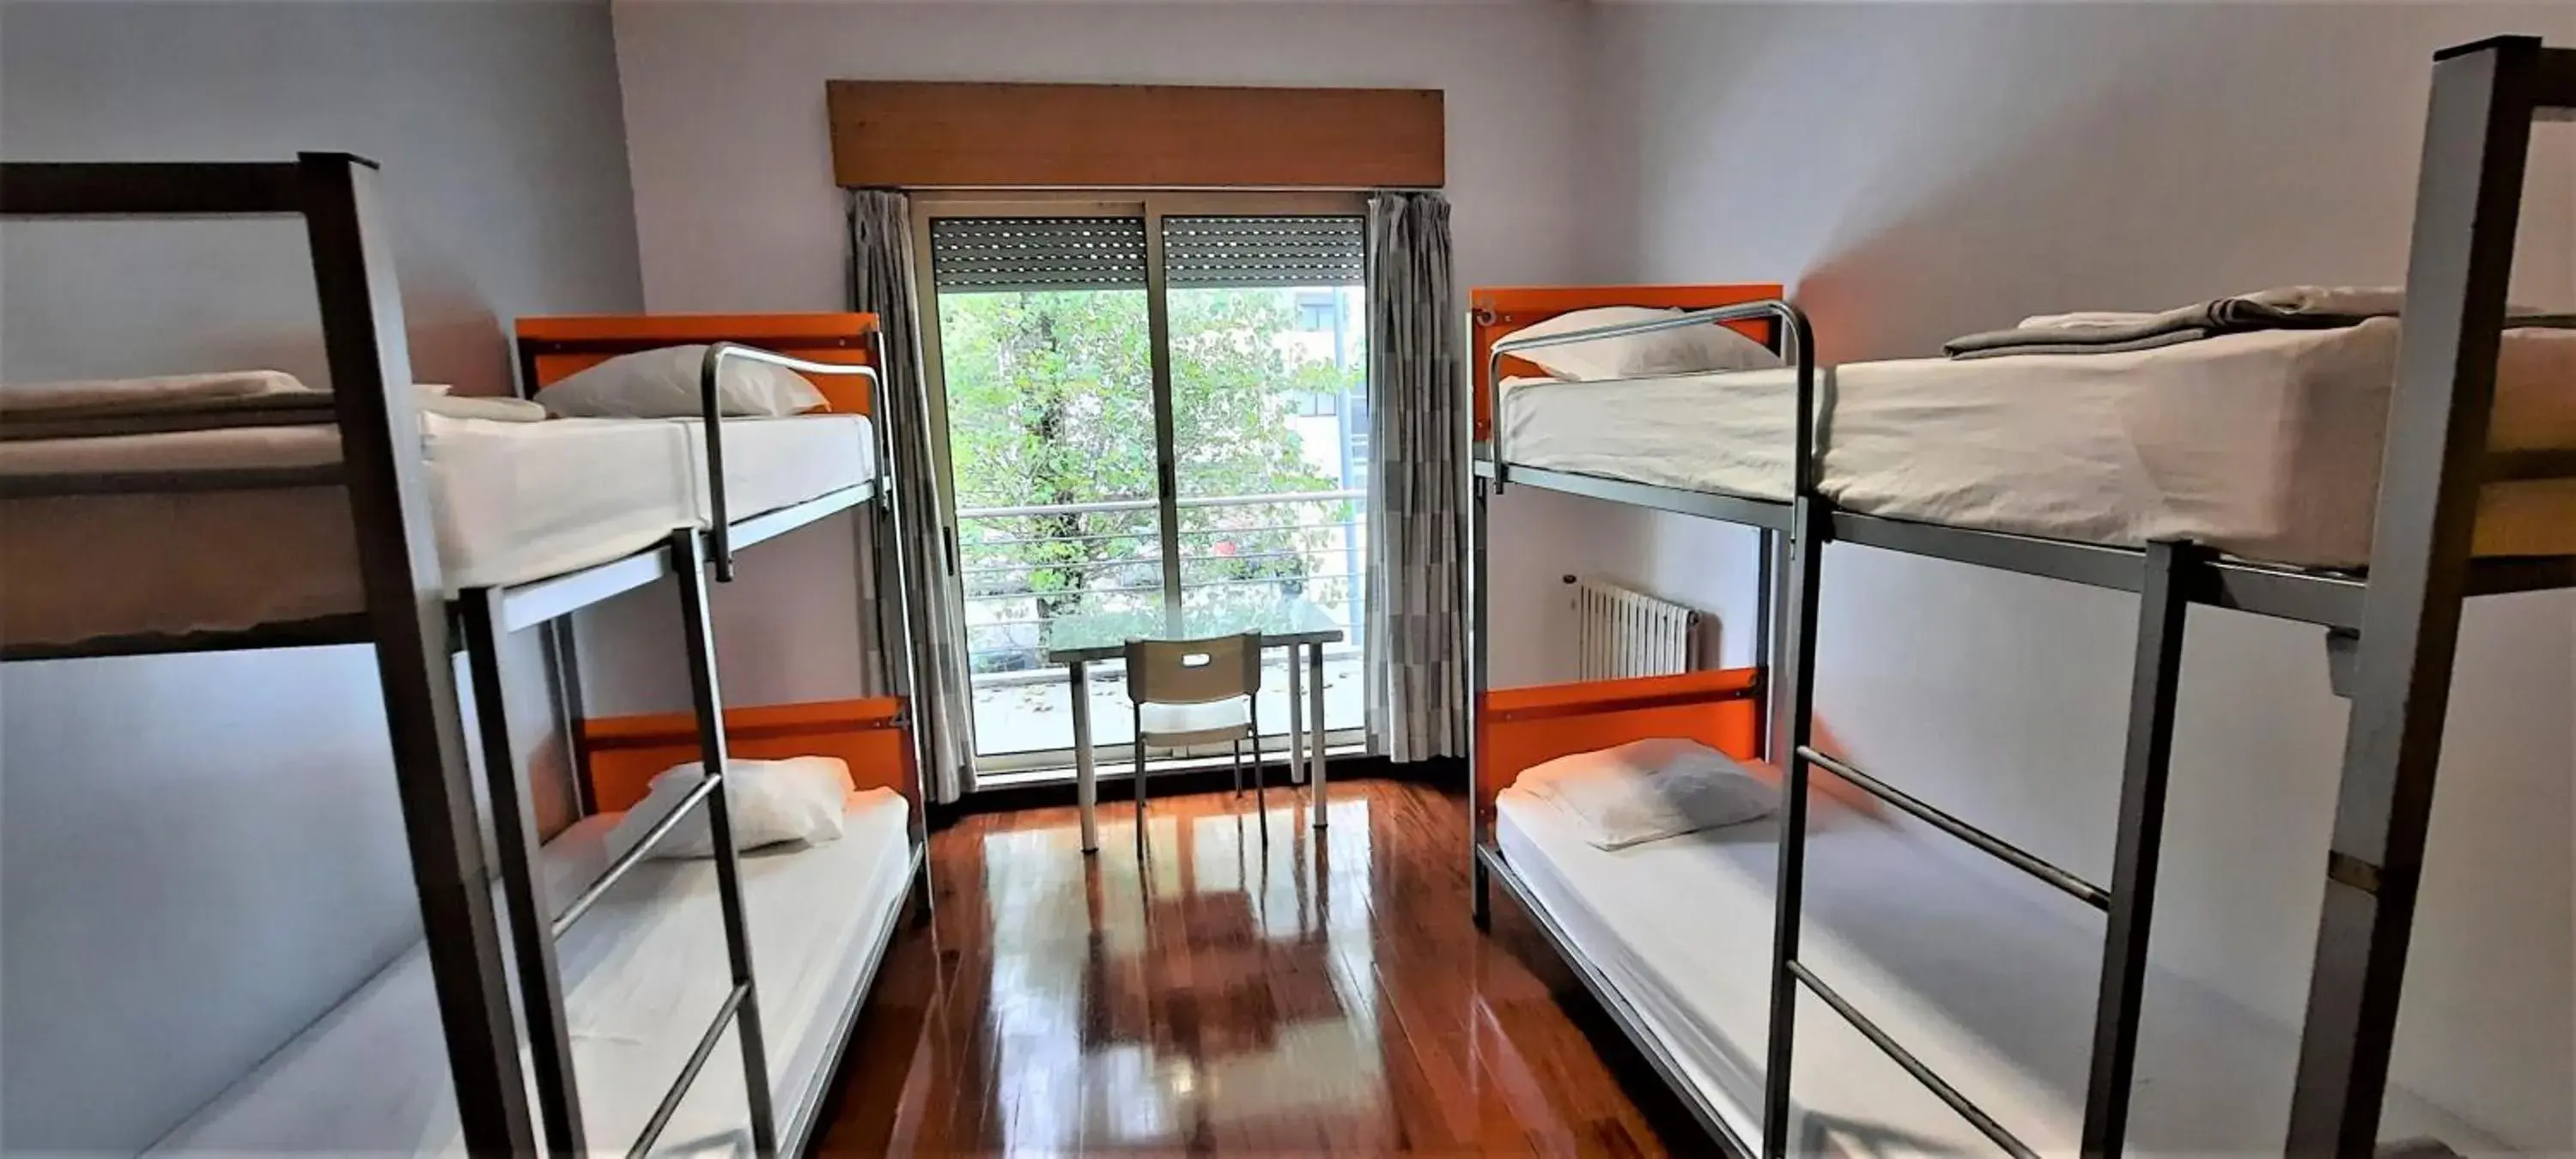 Bedroom, Bunk Bed in HI Porto - Pousada de Juventude